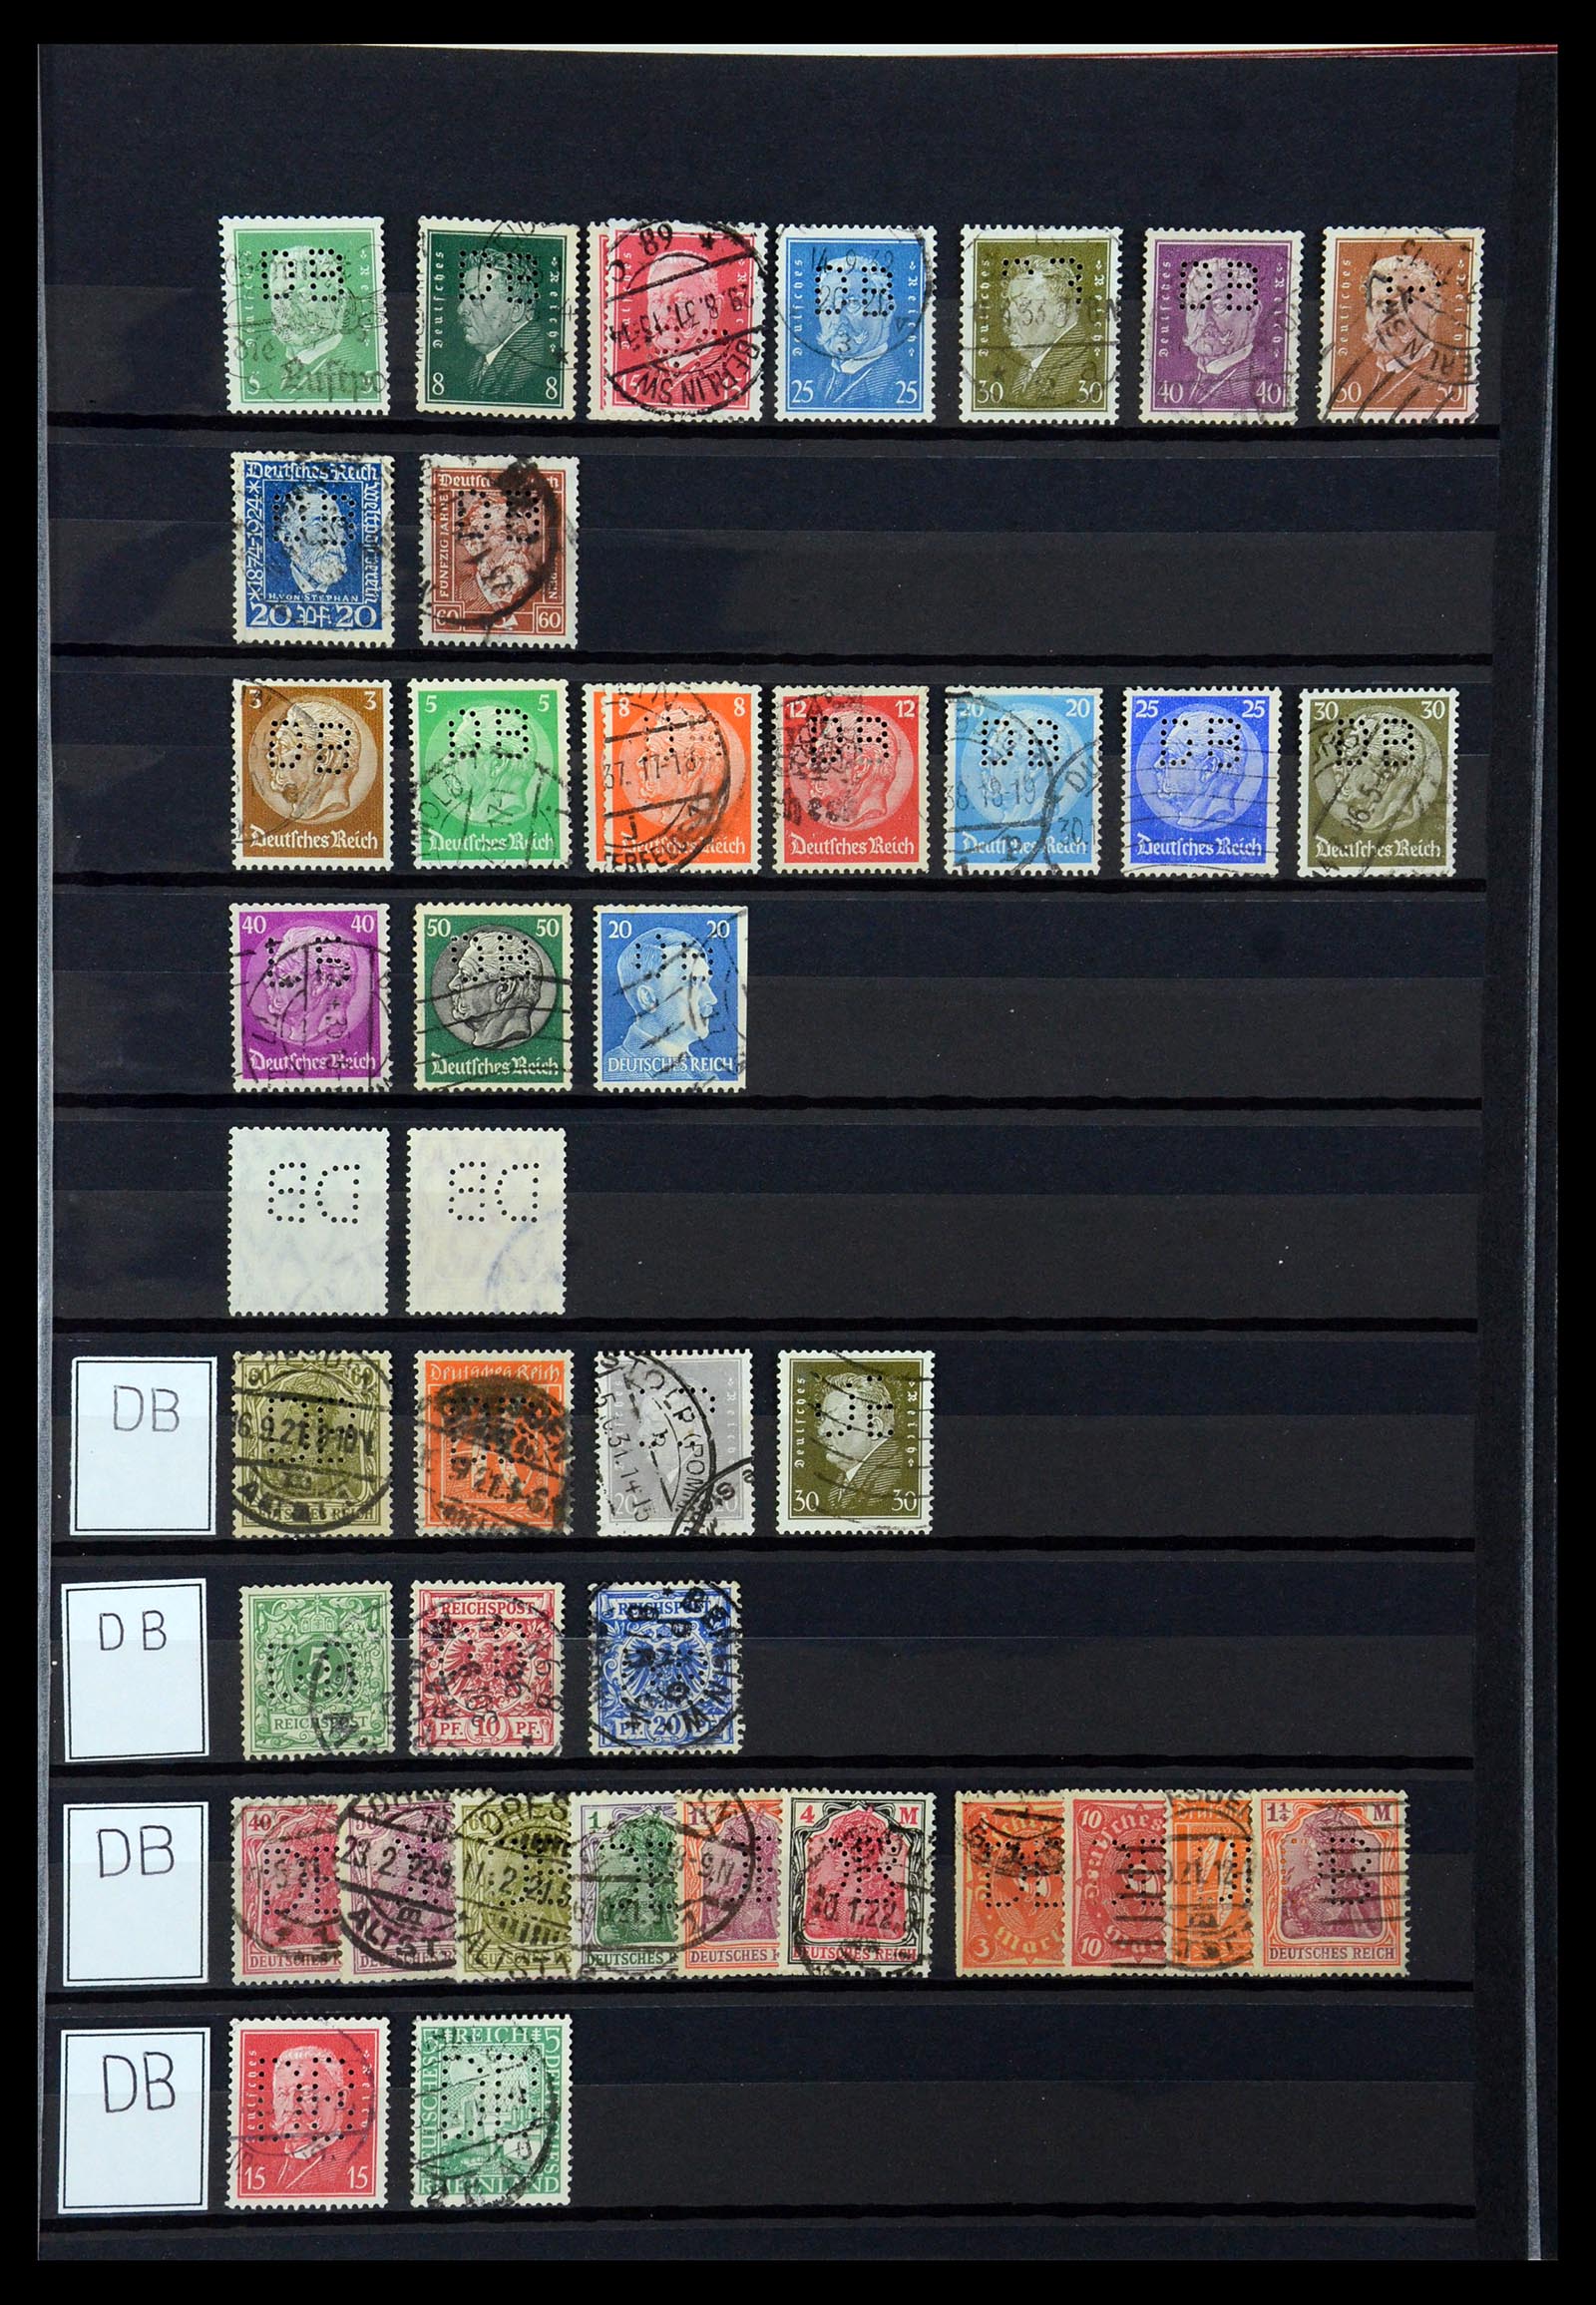 36405 091 - Stamp collection 36405 German Reich perfins 1880-1945.